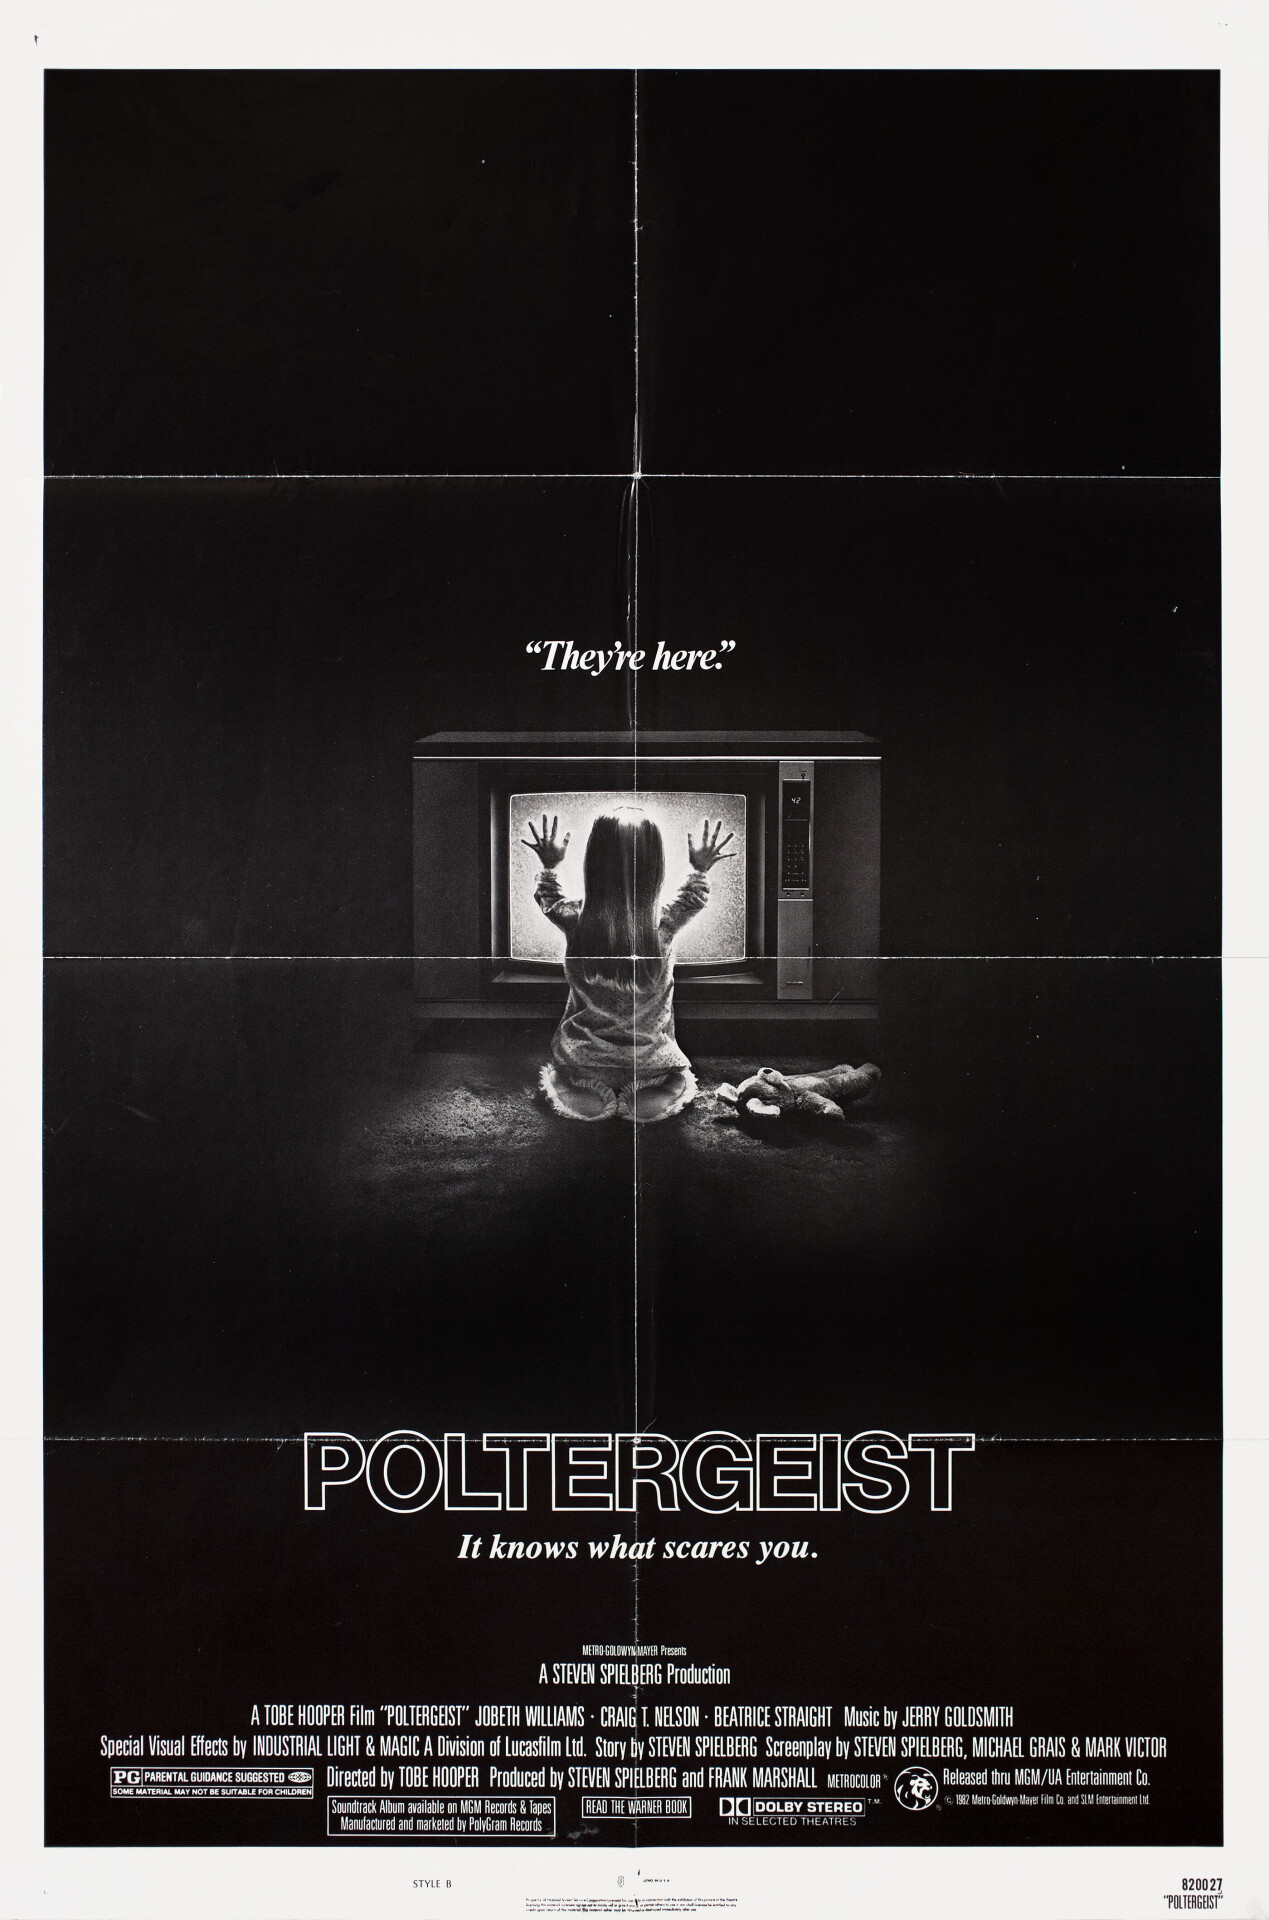 Полтергейст (Poltergeist, 1982), режиссёр Тобе Хупер, американский постер к фильму (ужасы, 1982 год)